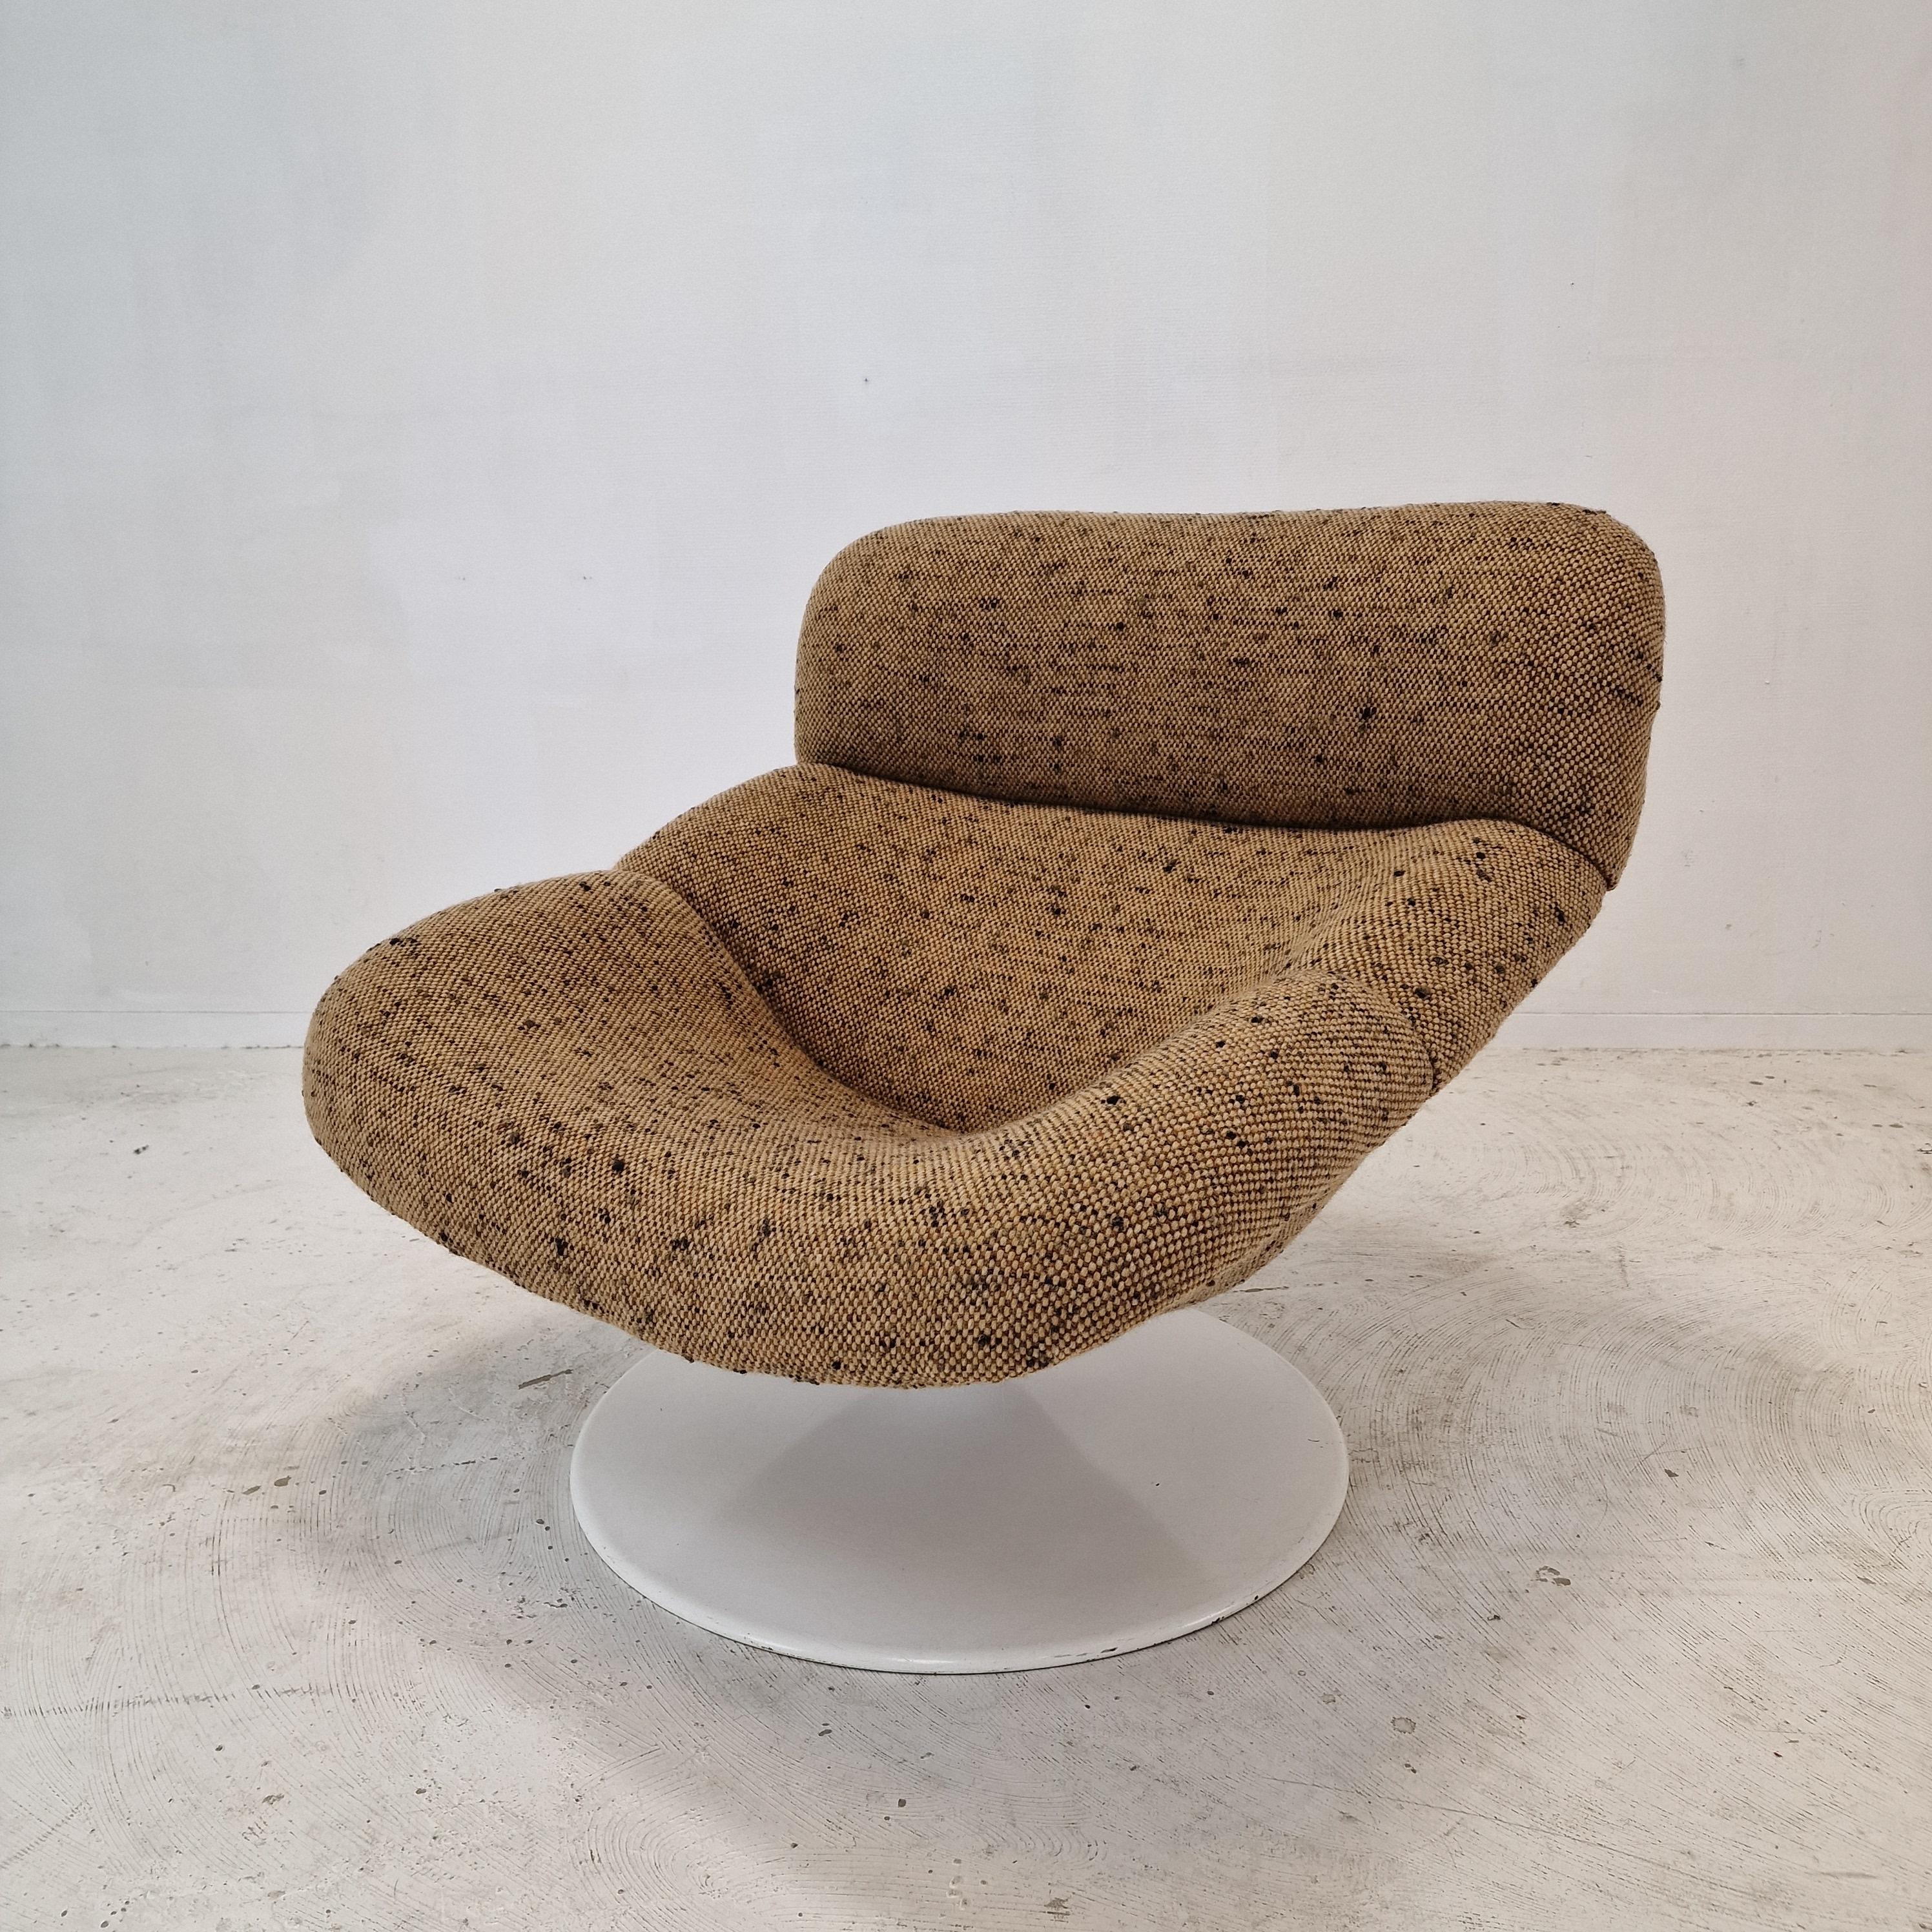 Äußerst komfortabler Artifort F518 Lounge Chair. 
Entworfen von dem berühmten englischen Designer Geoffrey Harcourt in den 70er Jahren. 

Sehr stabiler Holzrahmen mit einem großen drehbaren Metallfuß.

Der Stuhl ist gerade mit neuem Stoff und neuem